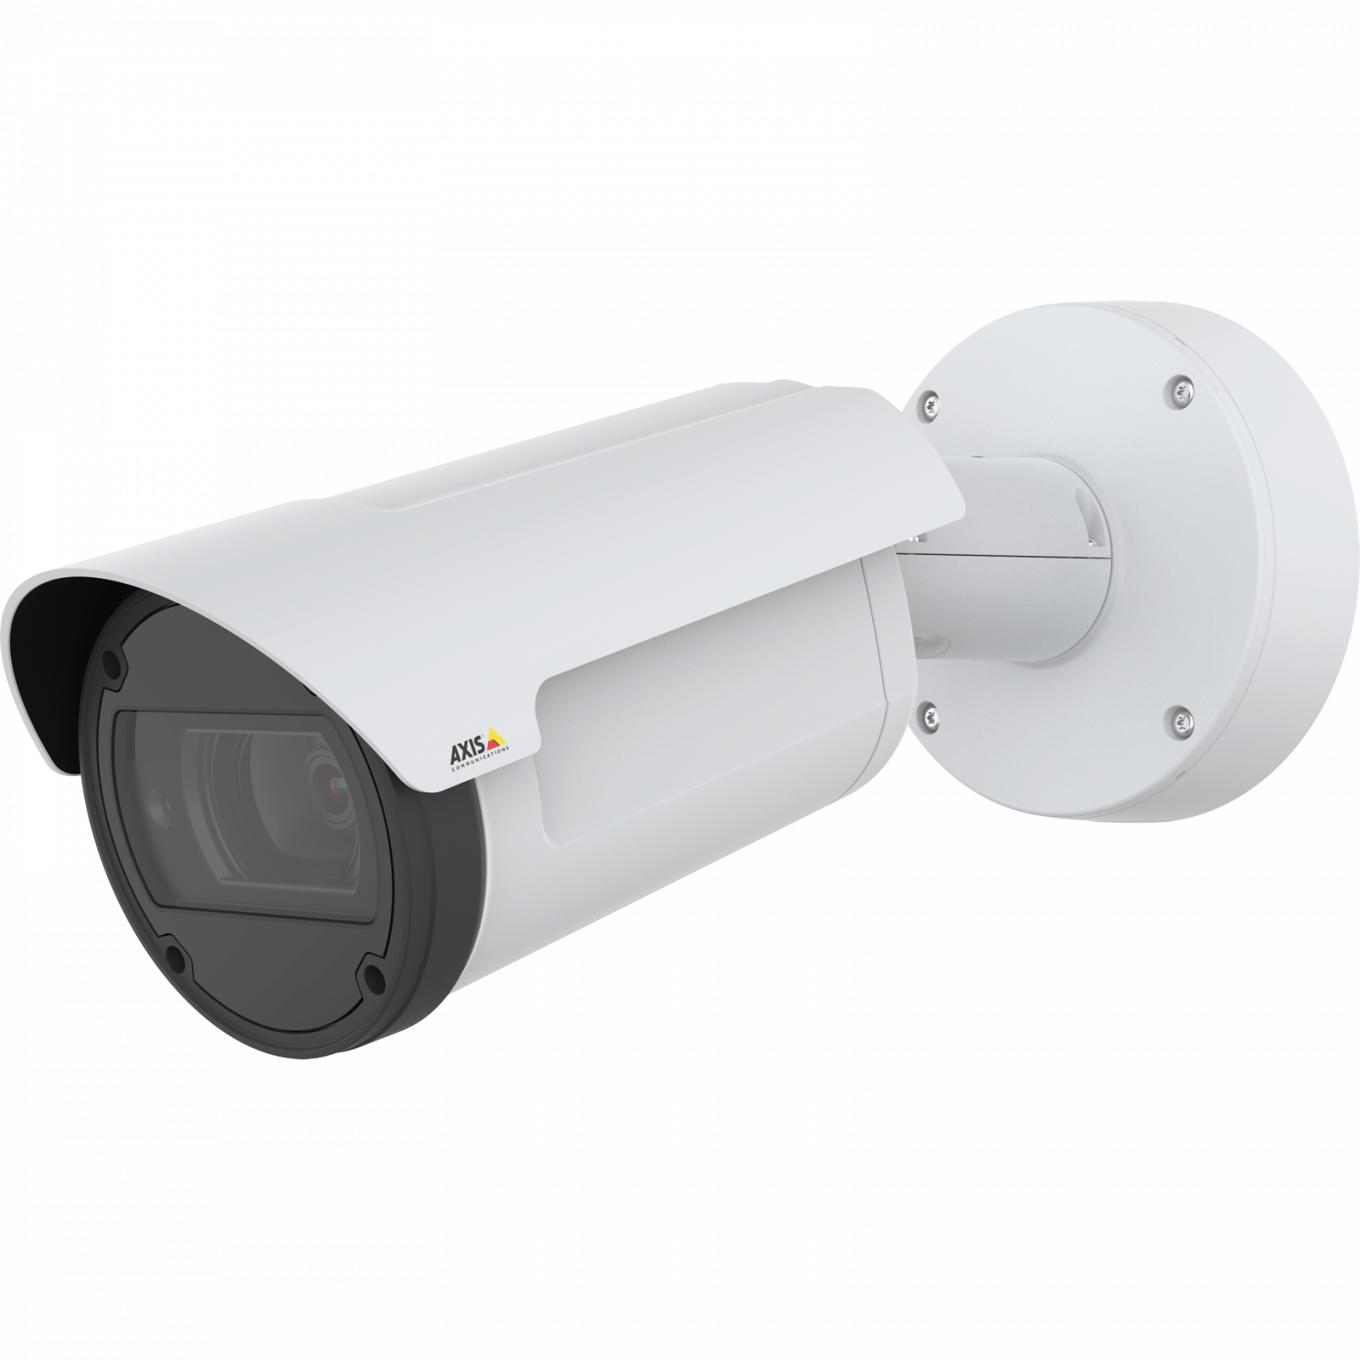 La caméra IP AXIS Q1798-LE dispose de Zipstream et de Lightfinder. Le produit est vu depuis son angle gauche.